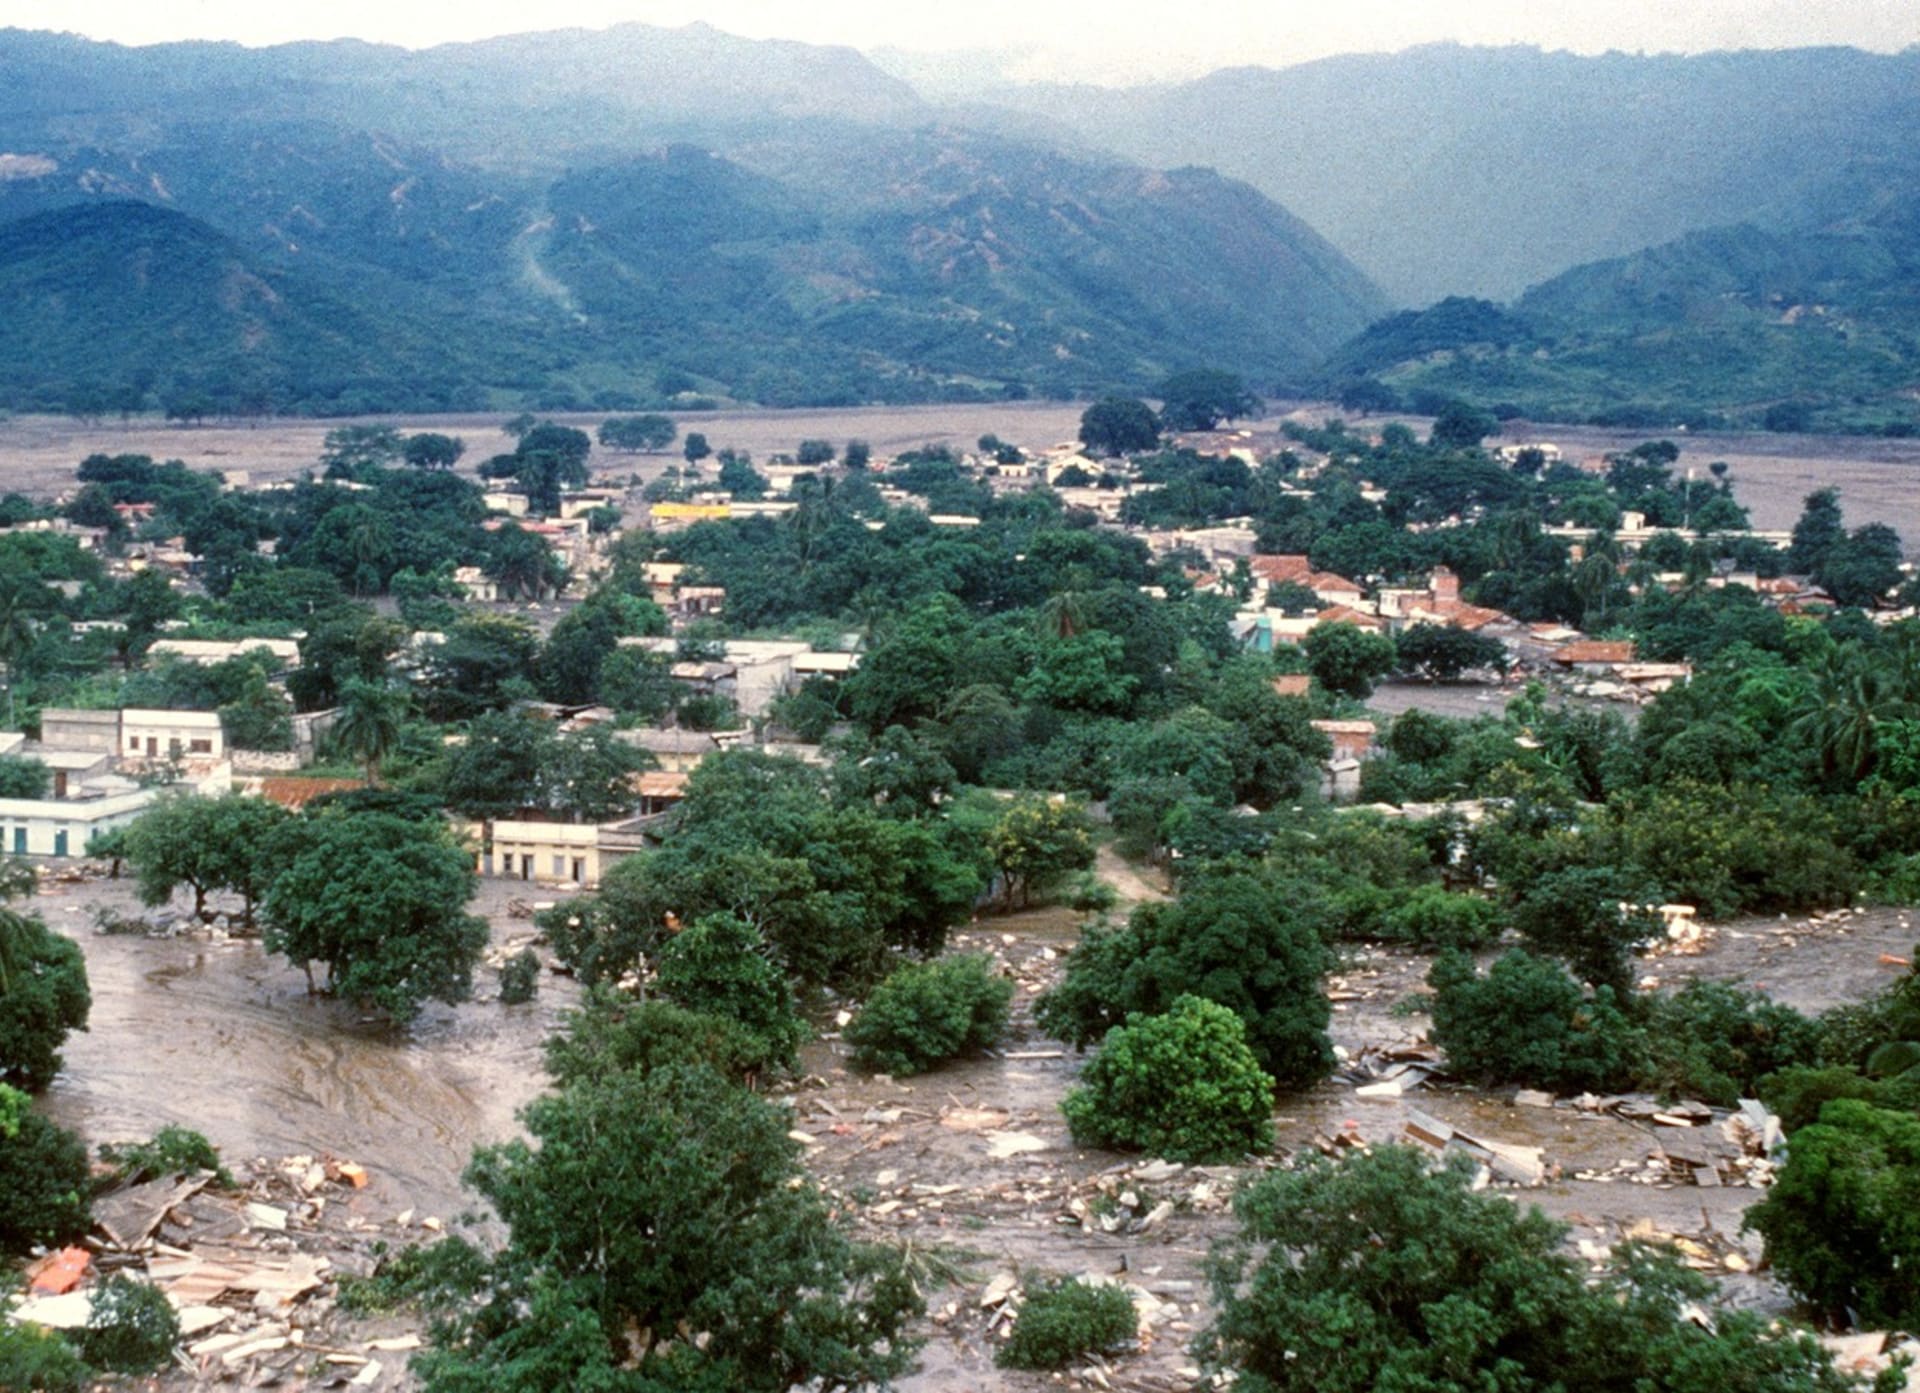 Výbuch a následná lavina bahna a kamení zabila v roce 1985 v obci Armero, která je od sopky Nevado de Ruiz vzdálená okolo 100 kilometrů, desítky tisíc lidí, zničila i další obce